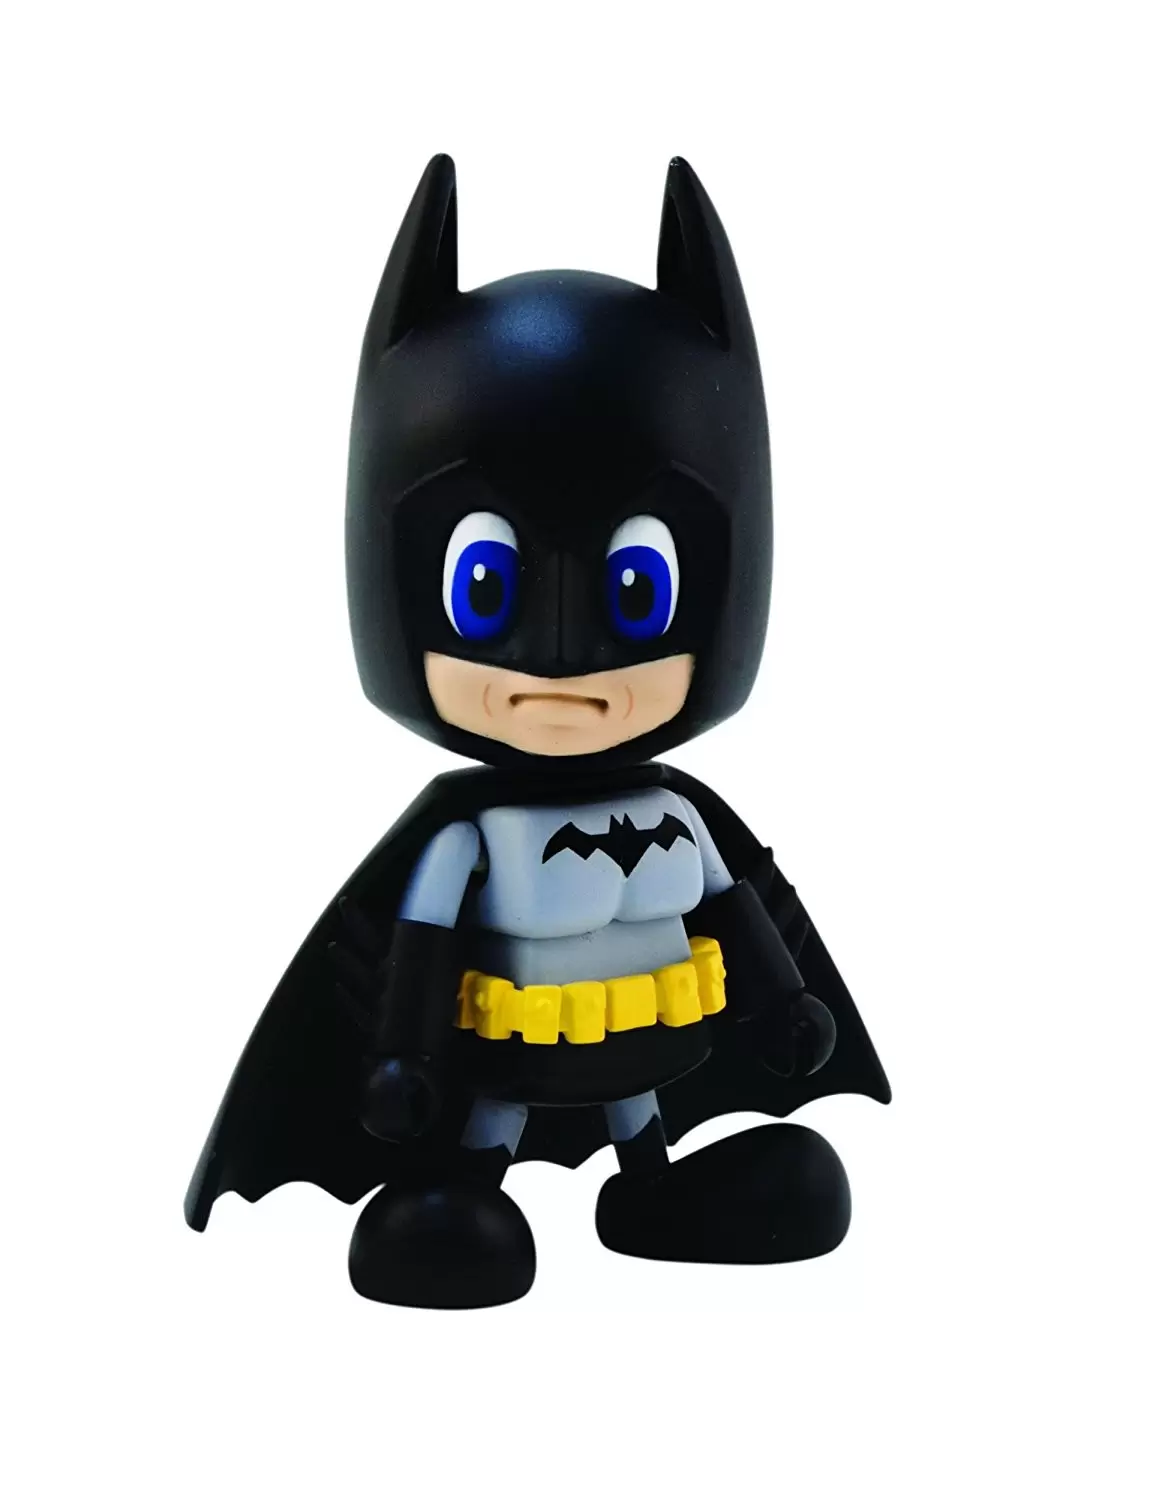 Cosbaby Figures - Modern Batman